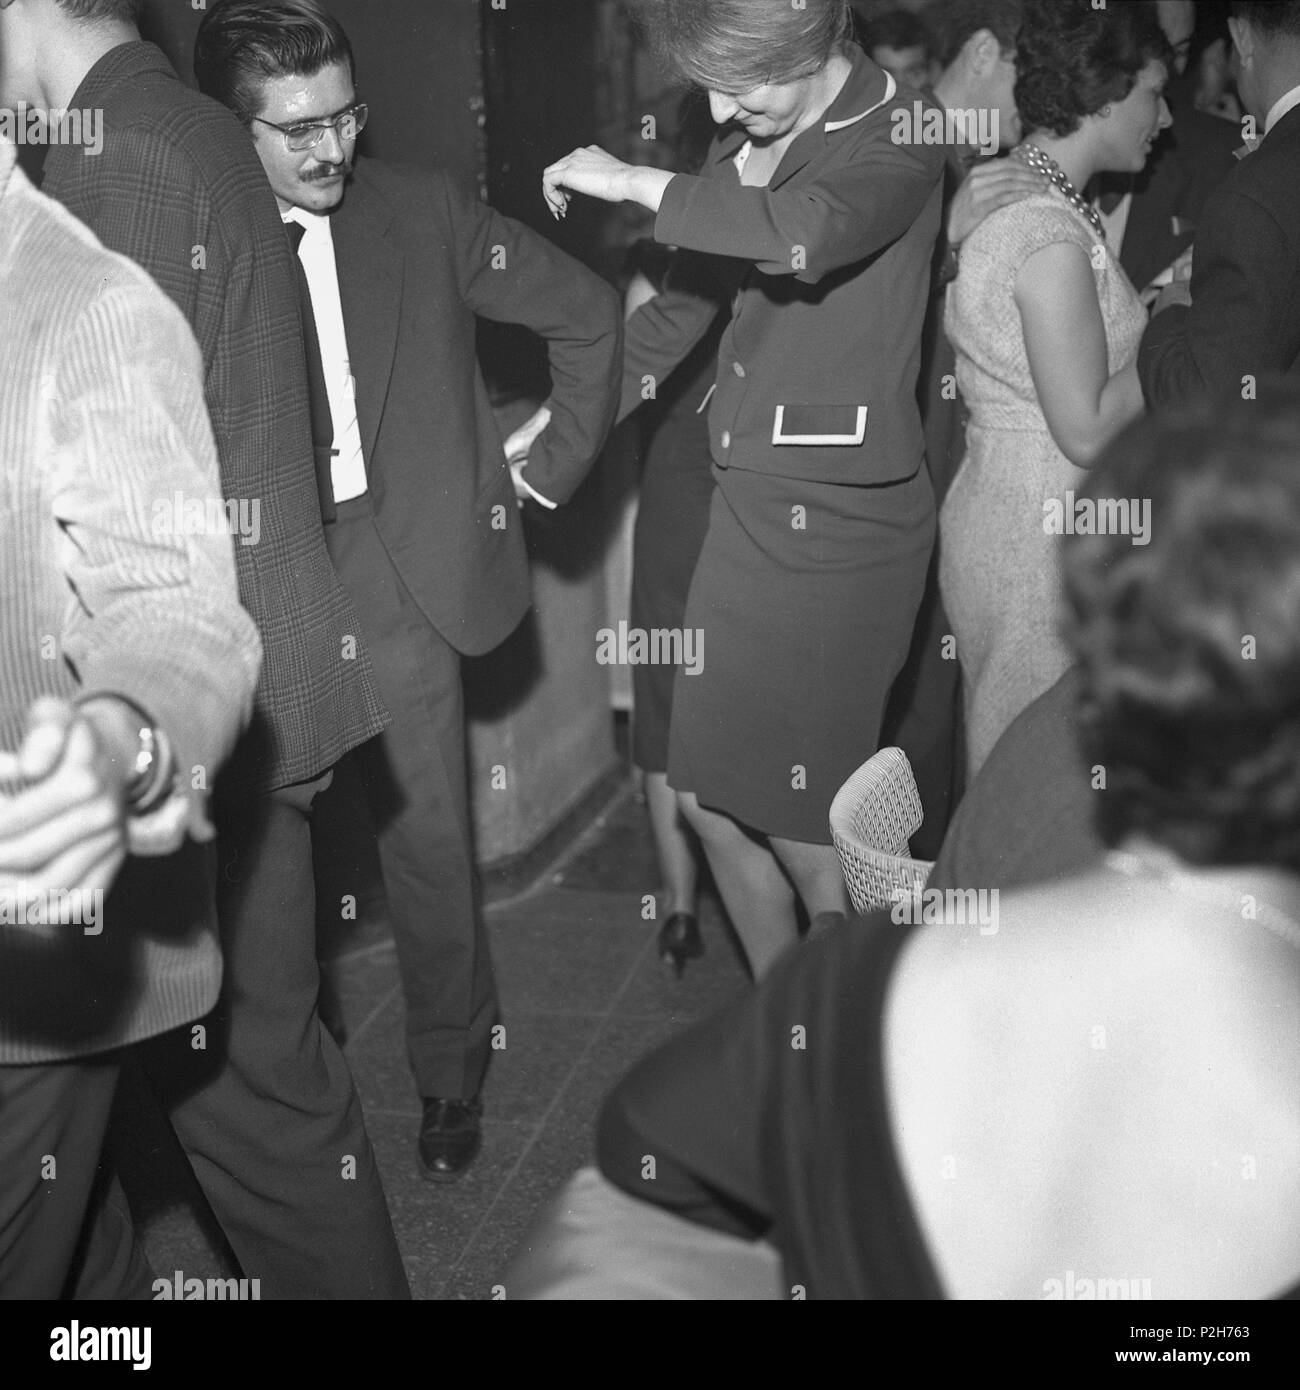 Sala Jamboree. Gente bailando. Barcellona, principio años 60. Foto Stock